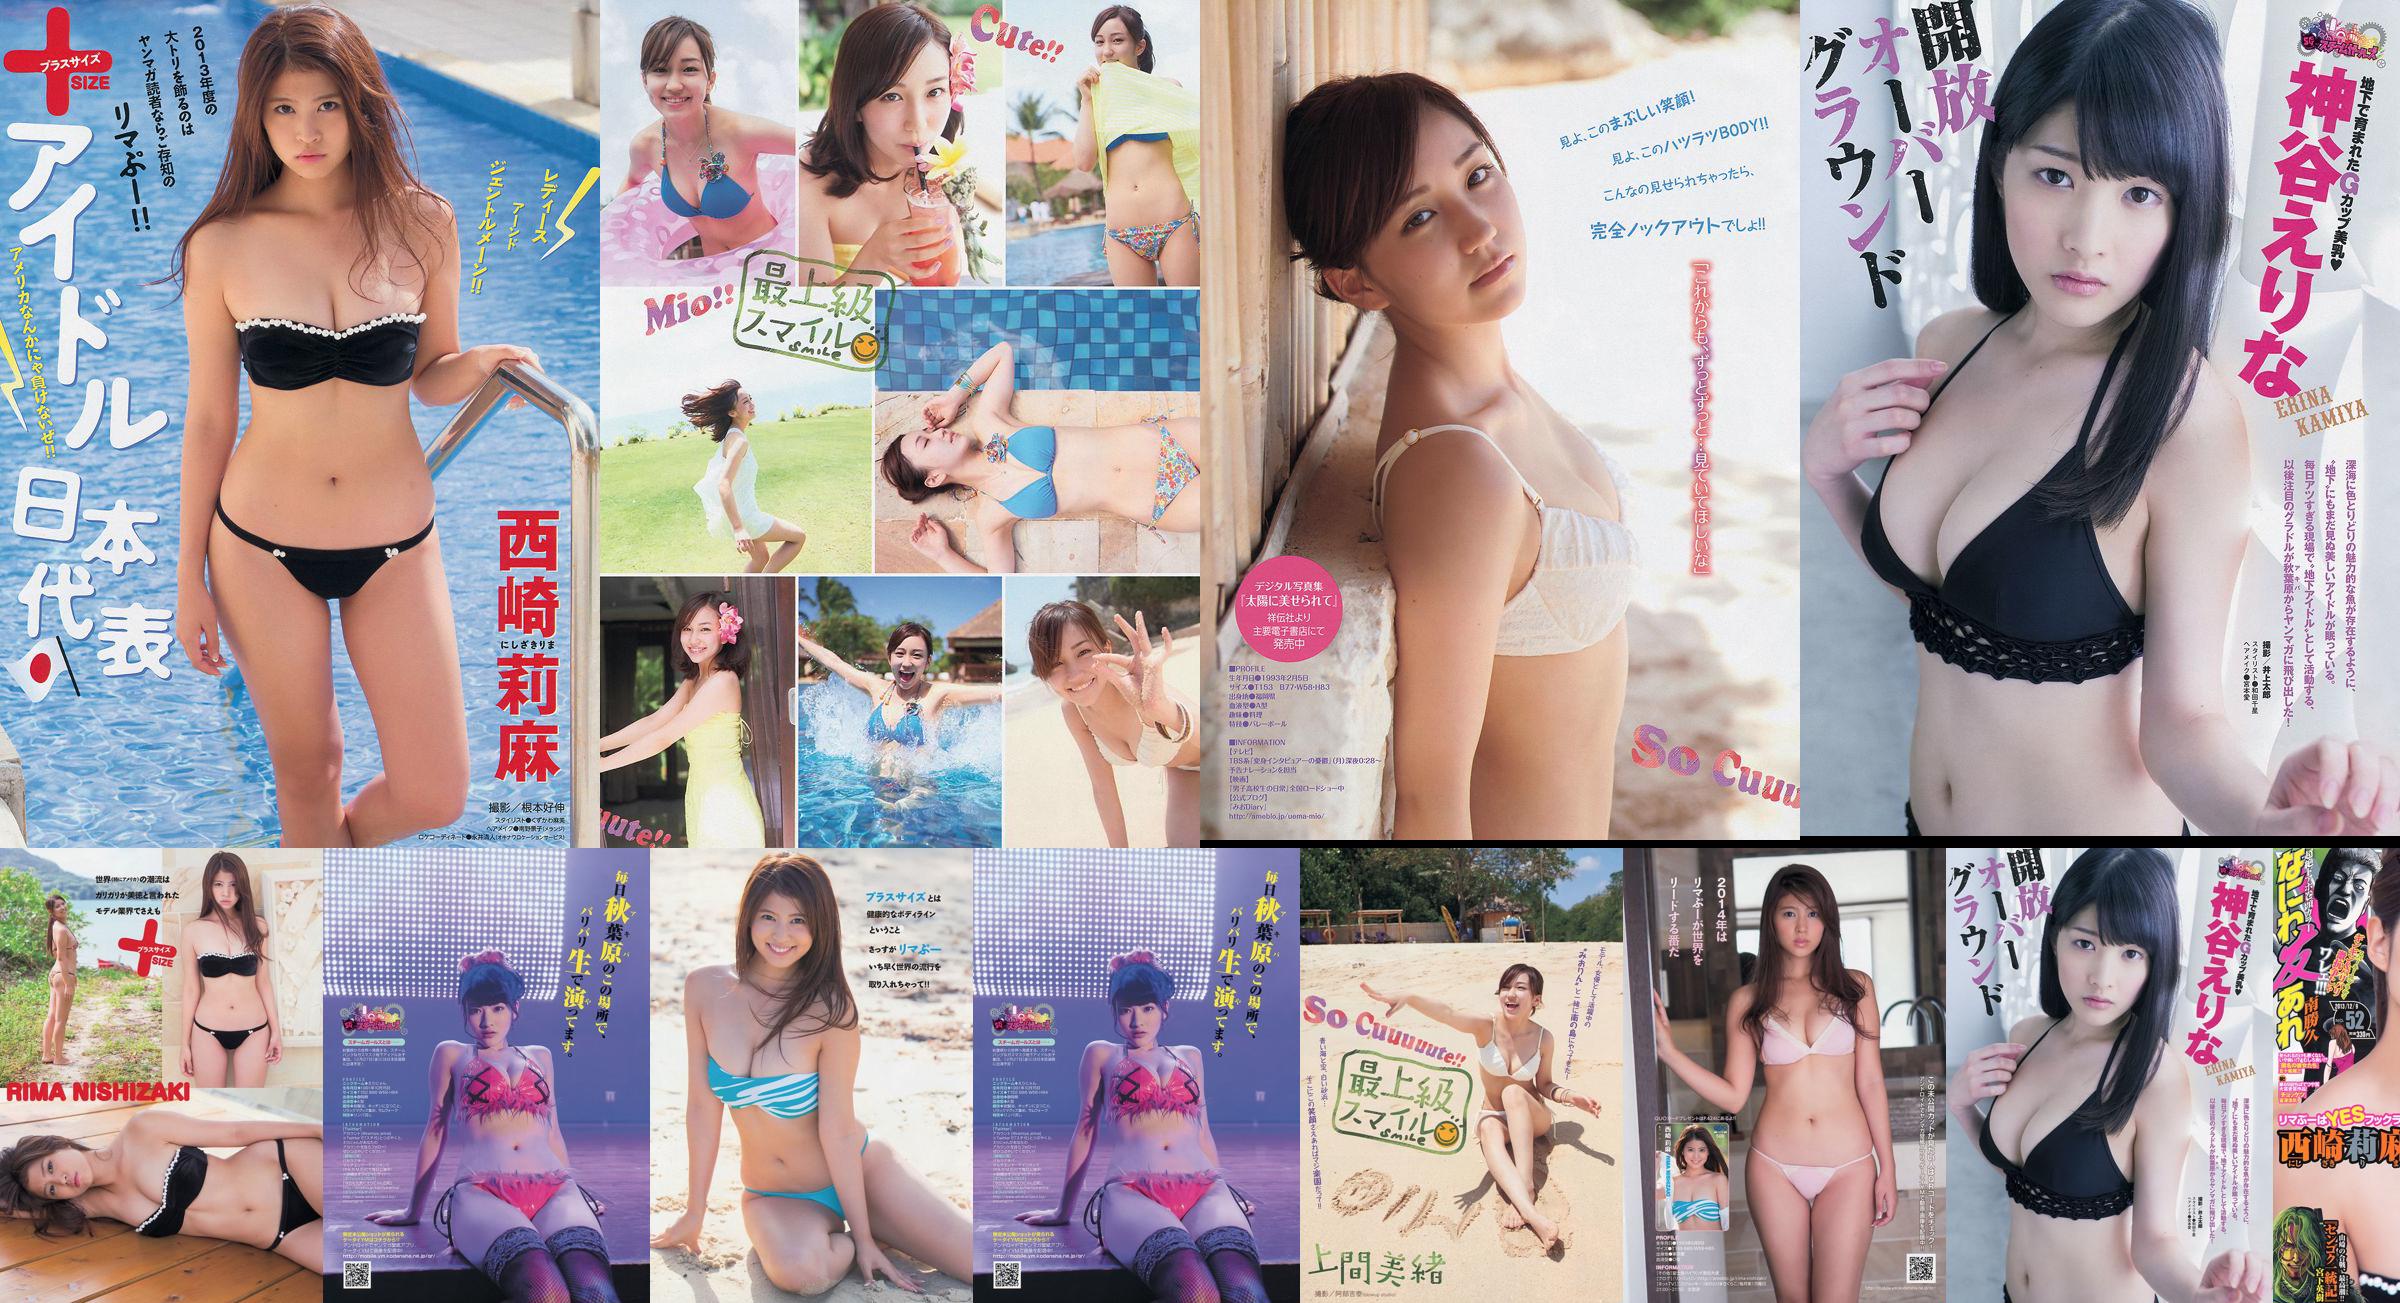 [Revista joven] Rima Nishizaki Mio Uema Erina Kamiya 2013 No.52 Photo Moshi No.9153bd Página 1